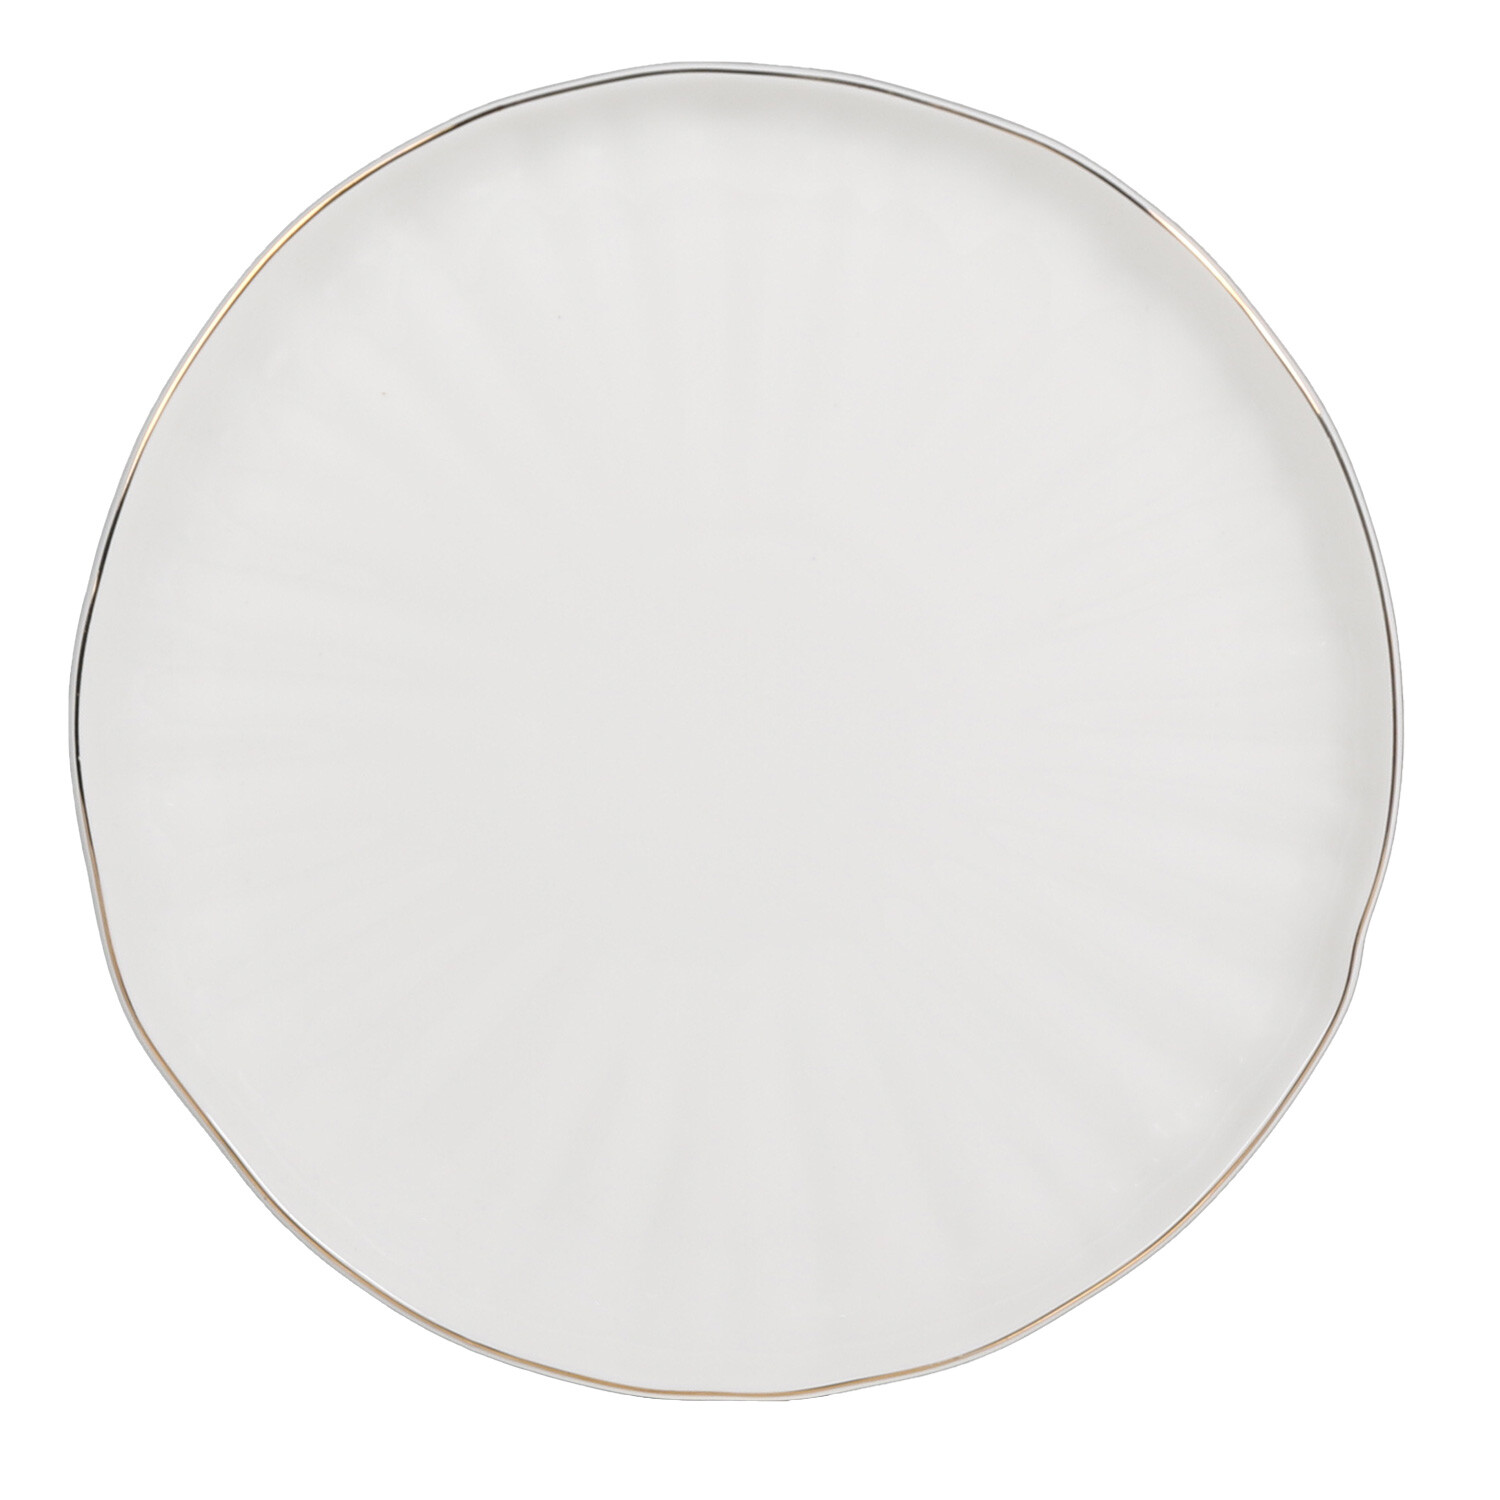 10.5 inch White Porcelain Dinner Plate Image